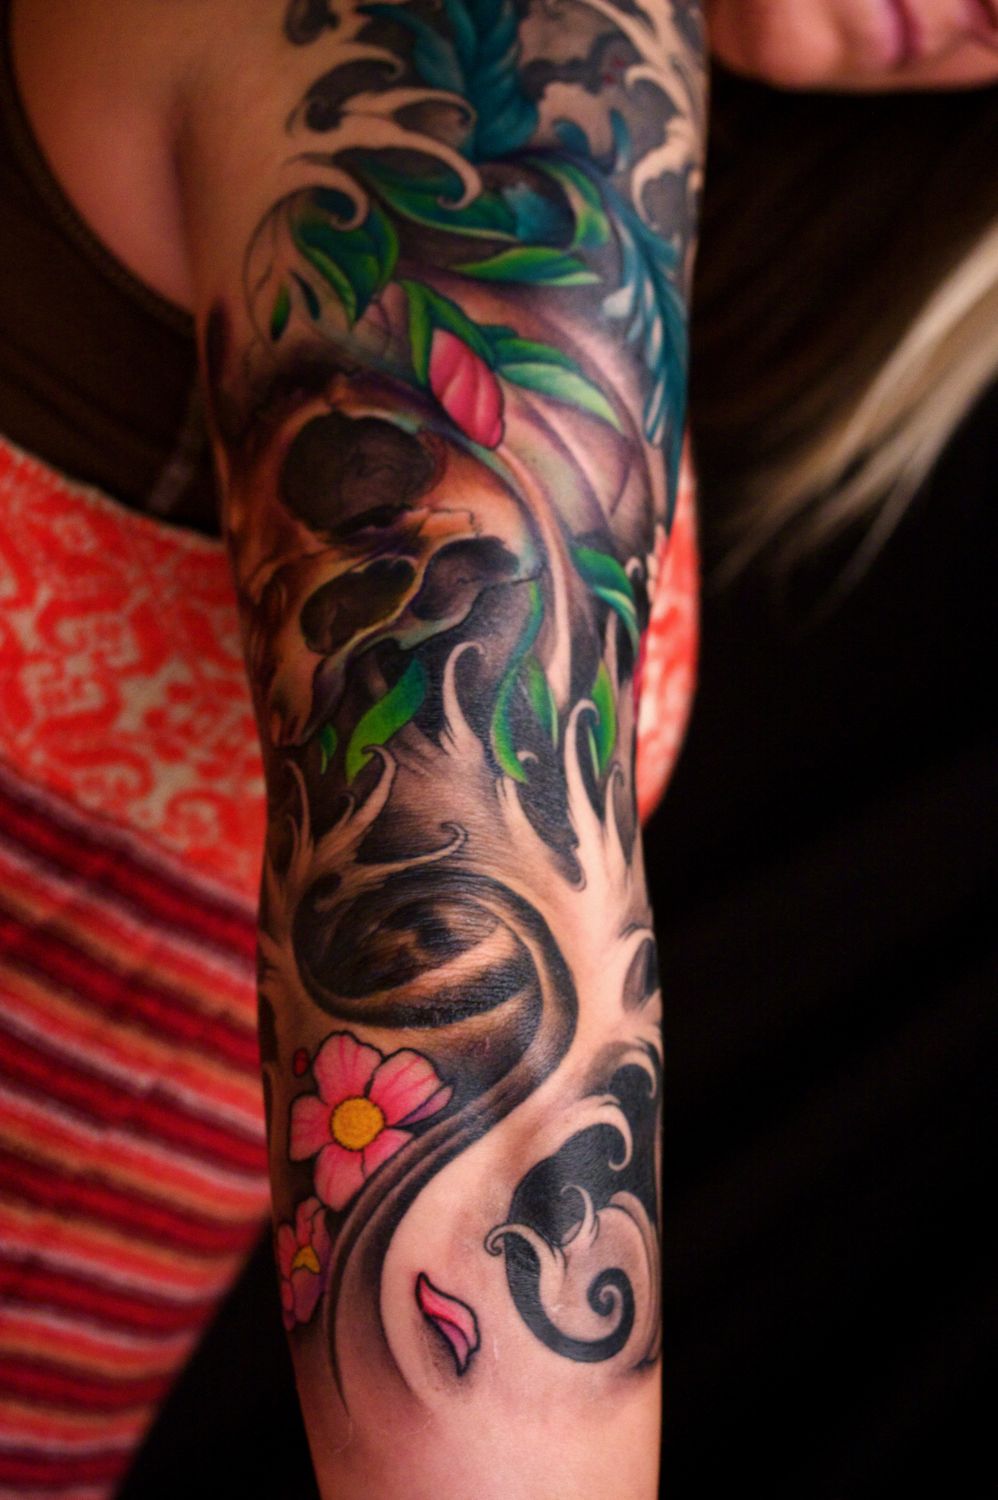 Amazing Sleeve Arm Tattoo Design - | TattooMagz › Tattoo Designs / Ink